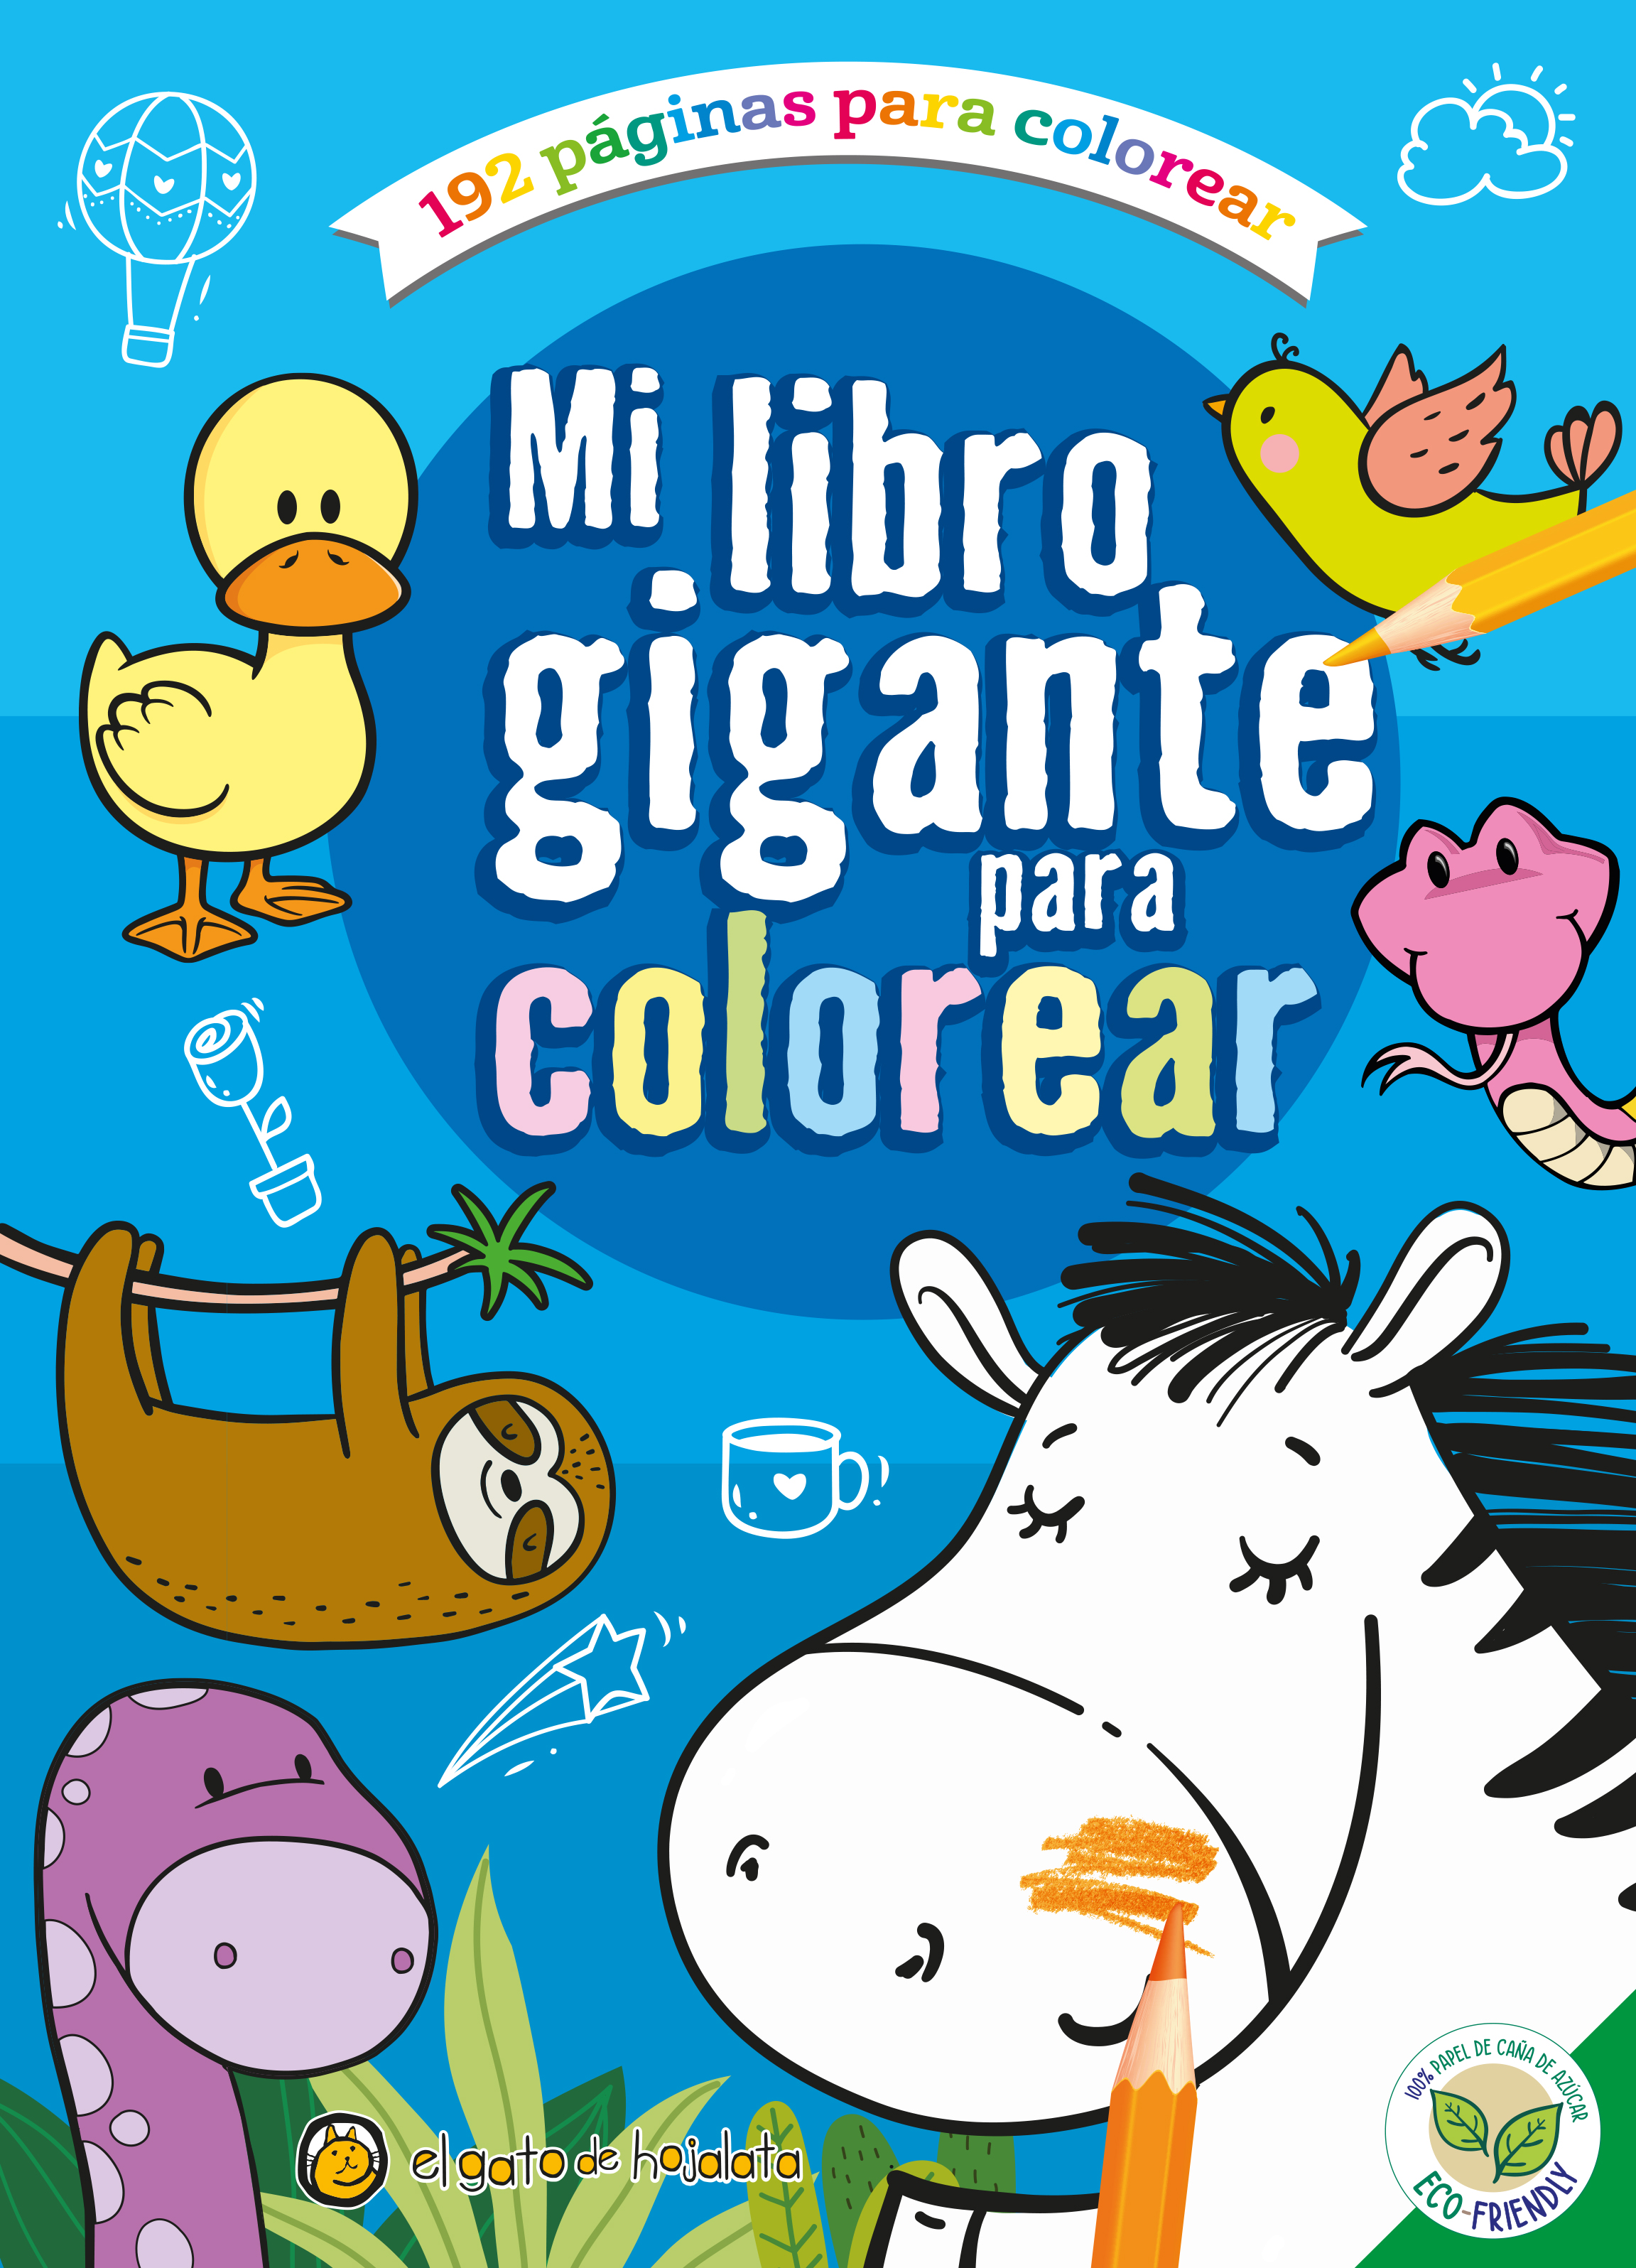 Mi primer libro para colorear con animales 1 año : Páginas para